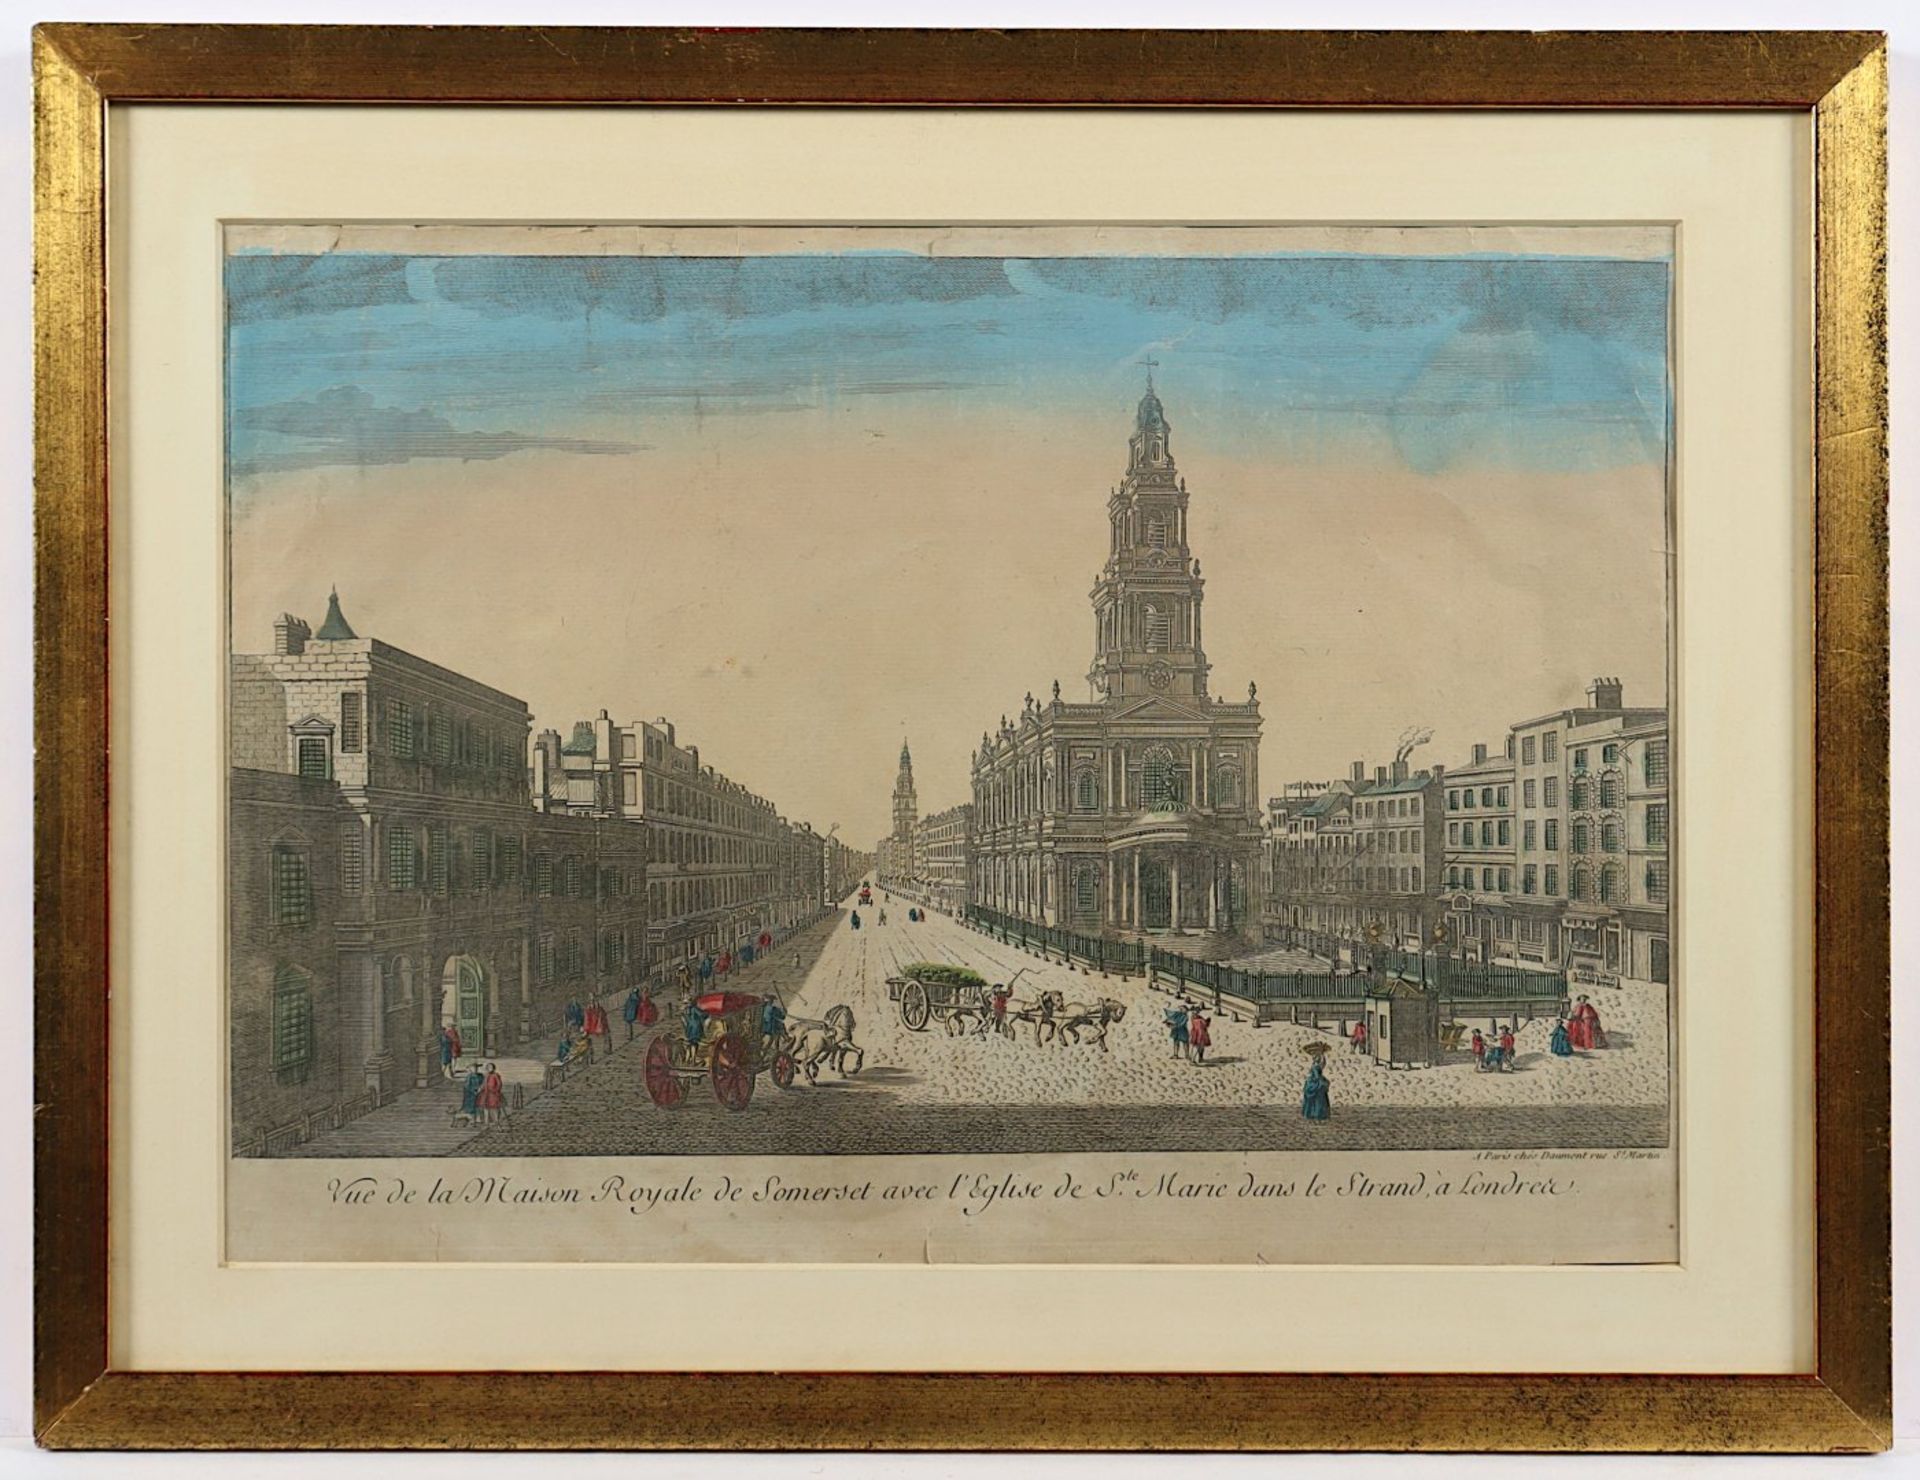 LONDON - VUE DE LA MAISON ROYALE DE SOMERSET, kolorierter Kupferstich, 25 x 40, bei Daumont,